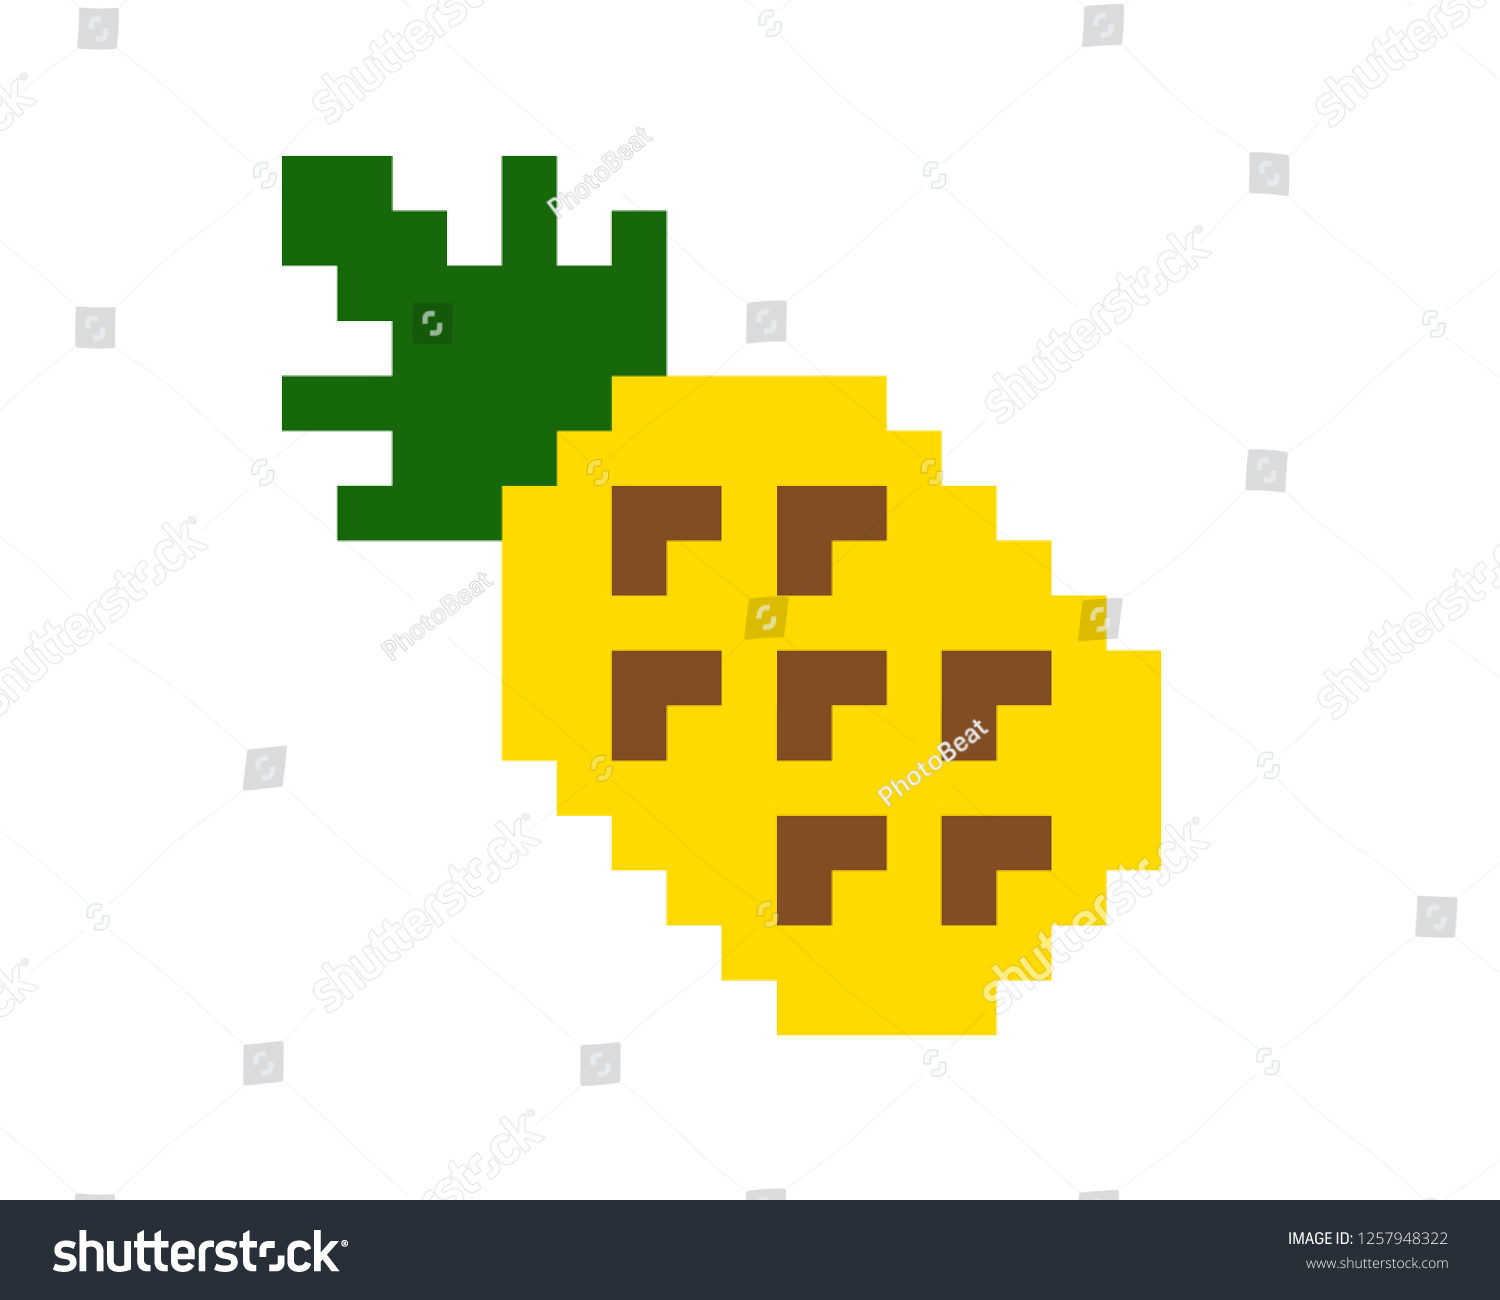 image vectorielle de stock de pixel art pineapple 1257948322 https www shutterstock com fr image vector pixel art pineapple 1257948322